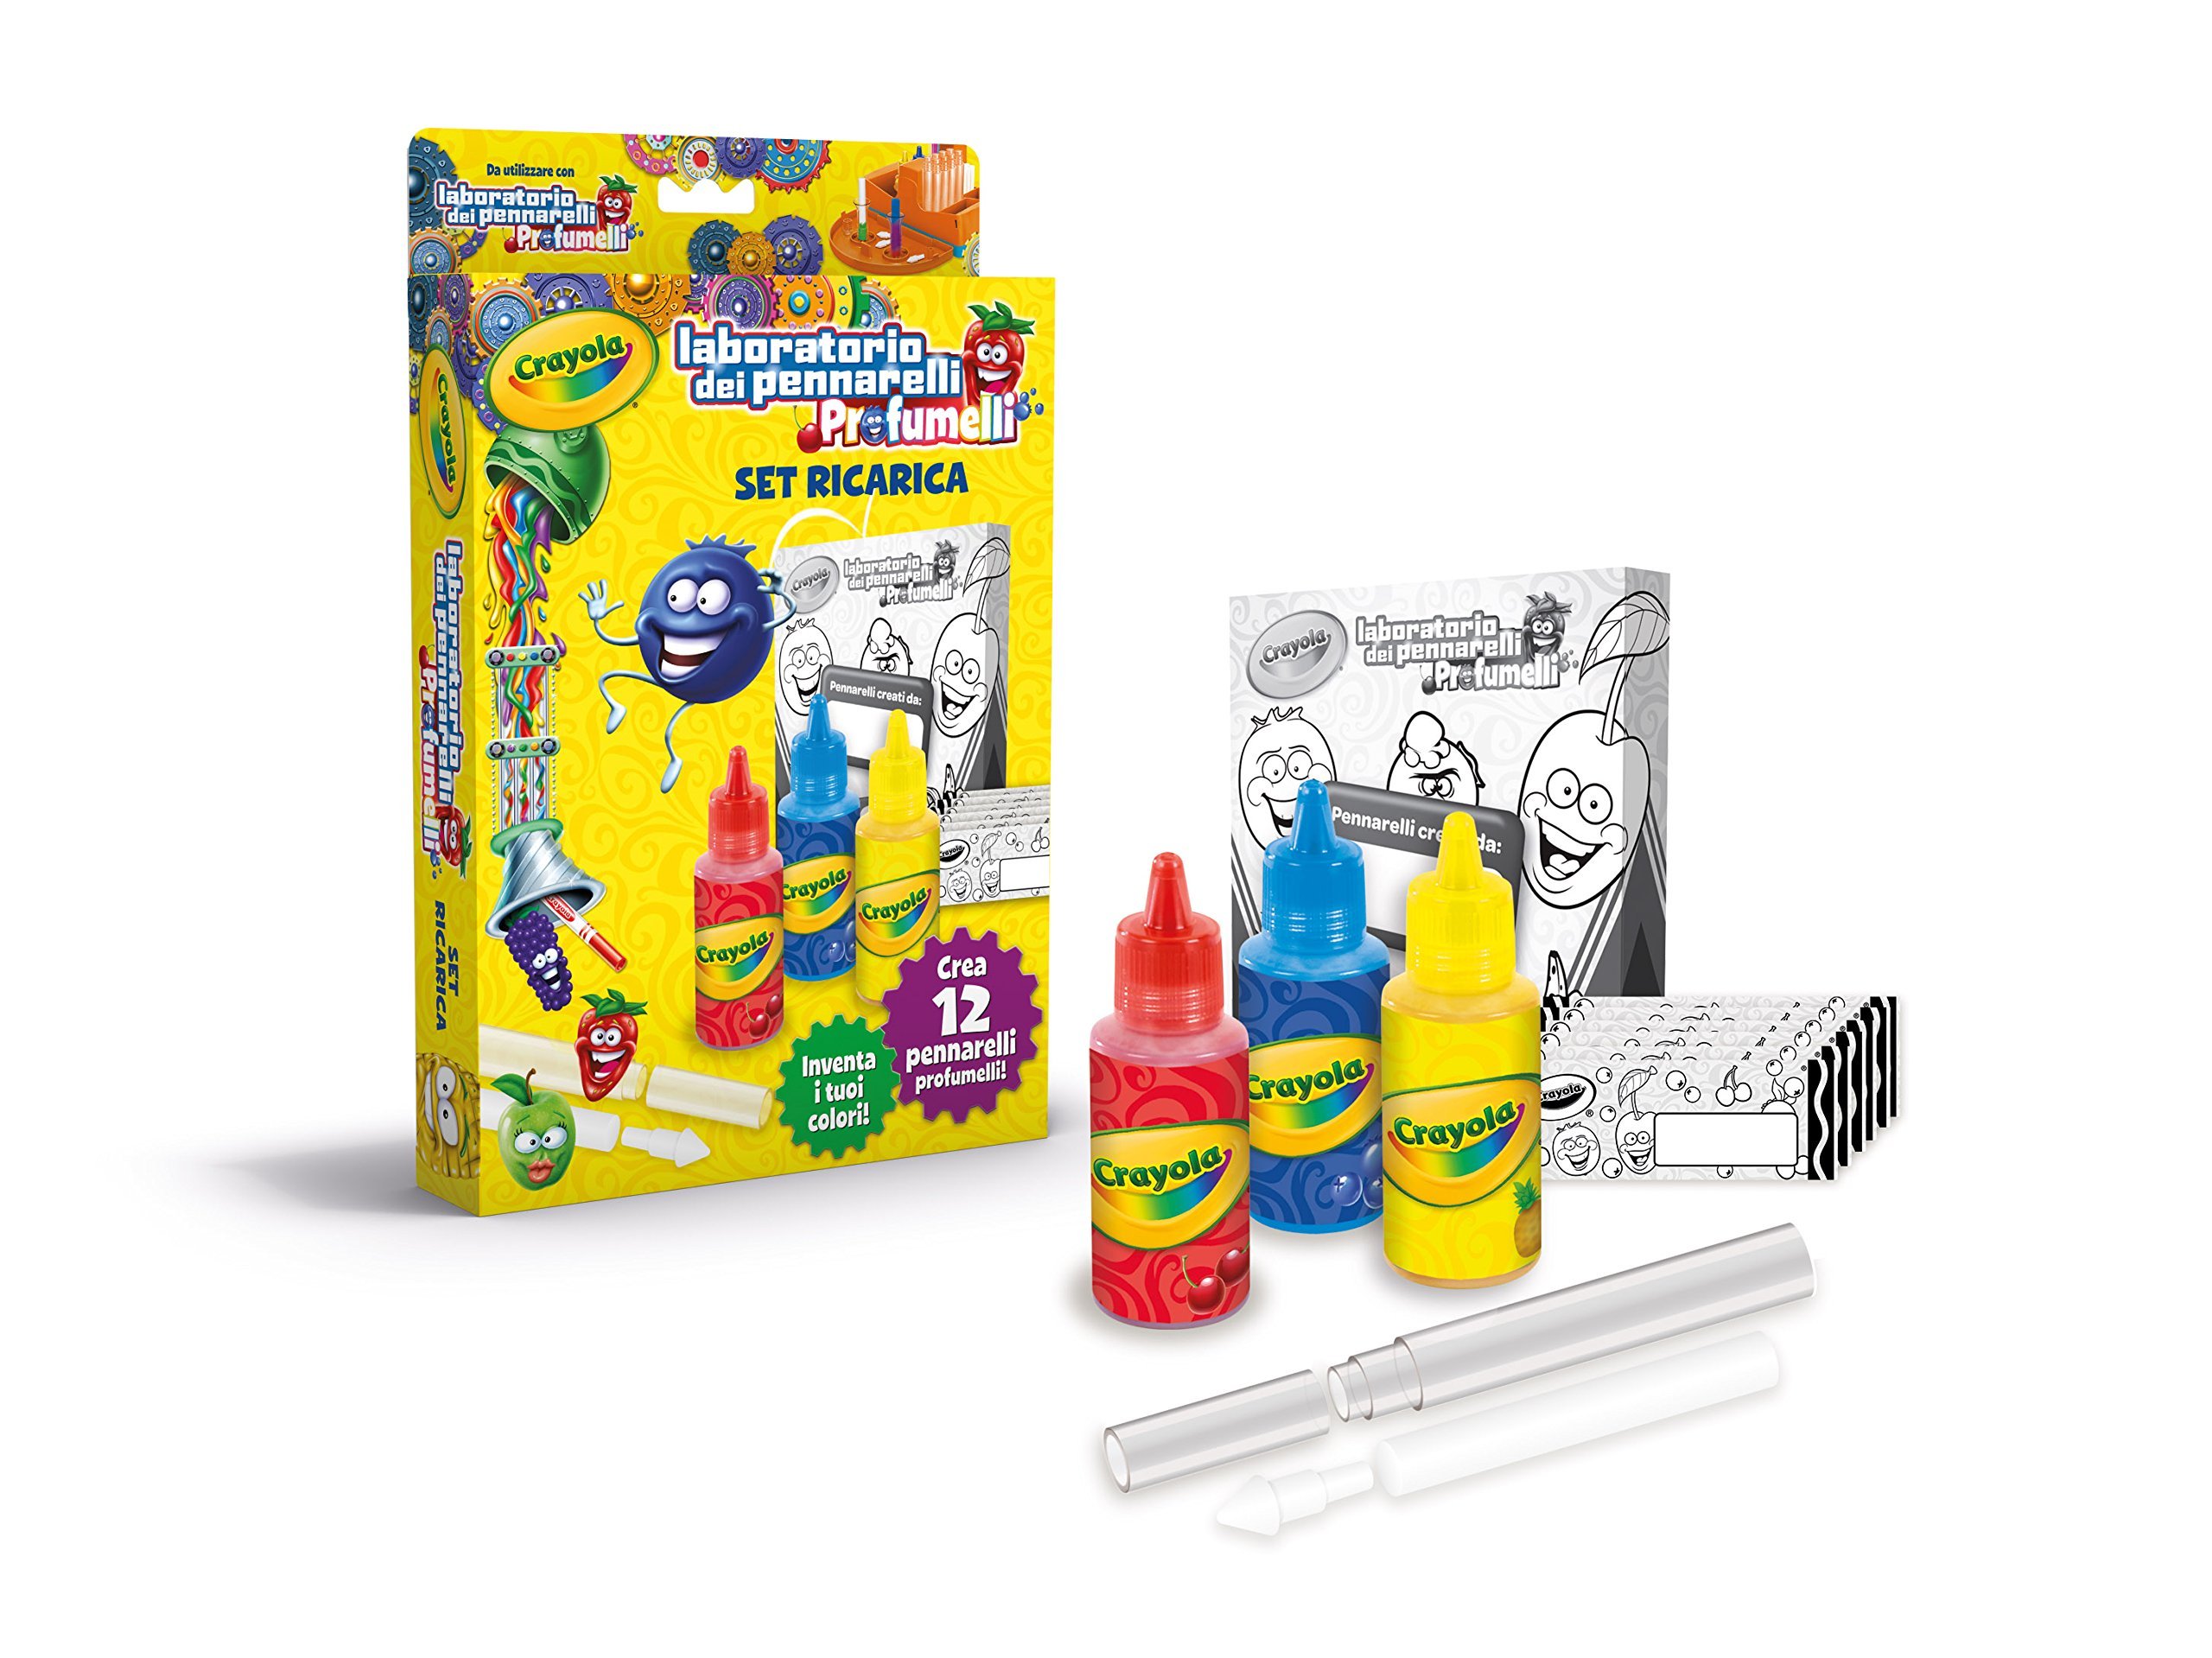 Crayola Marker Maker Refill Pack 